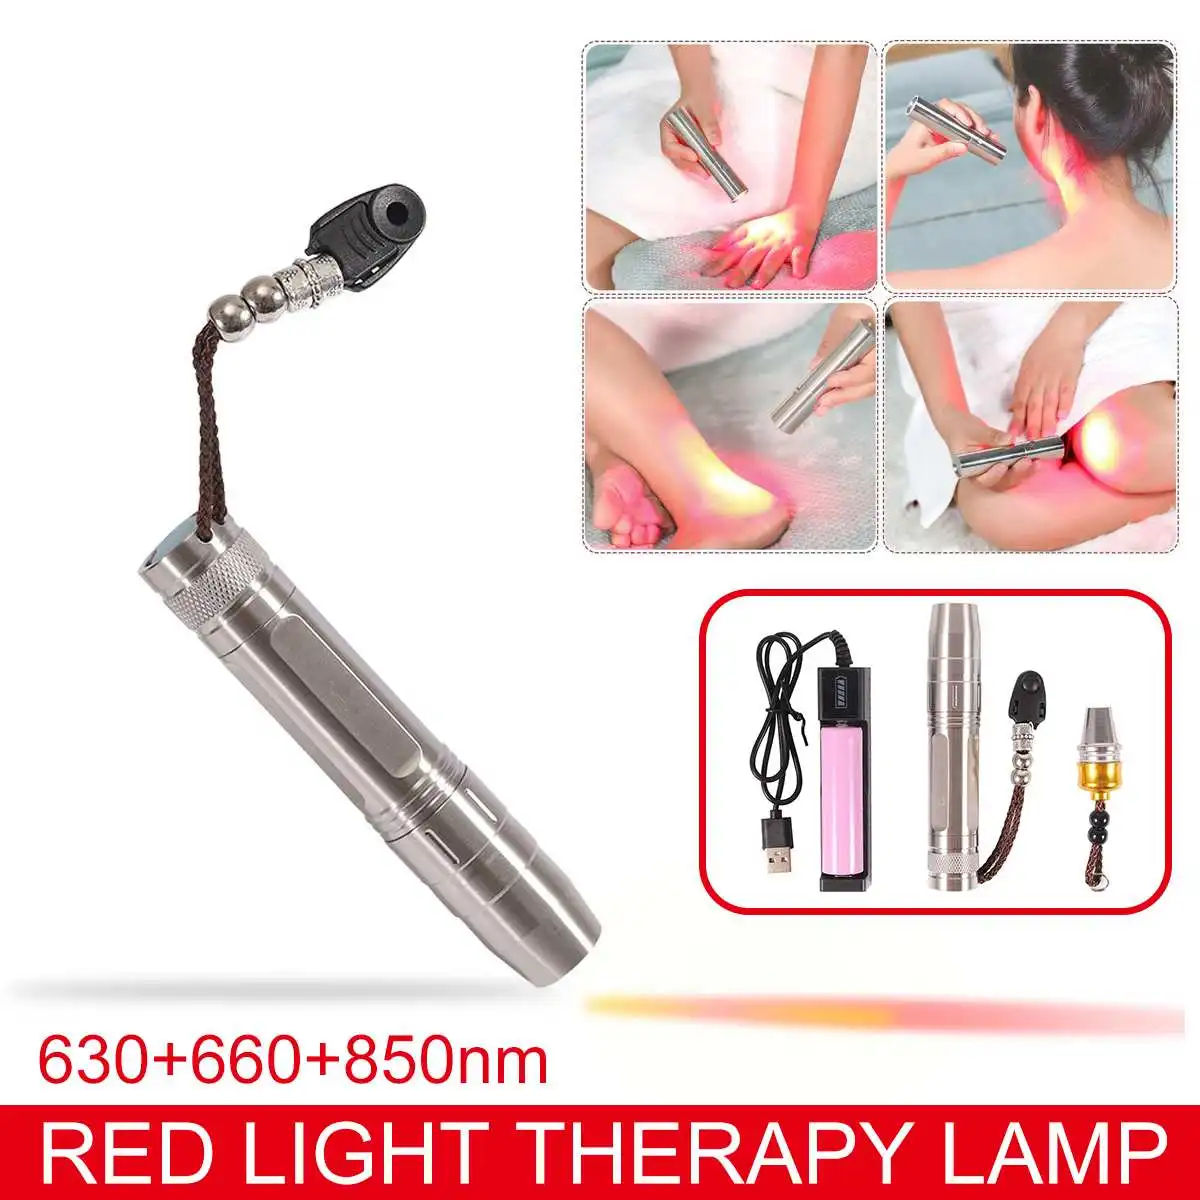 

Портативный светодиодный фонарь для лечения боли в суставах, около инфракрасного диапазона 850nm, ручной медицинский светильник 630nm 660nm, свето...